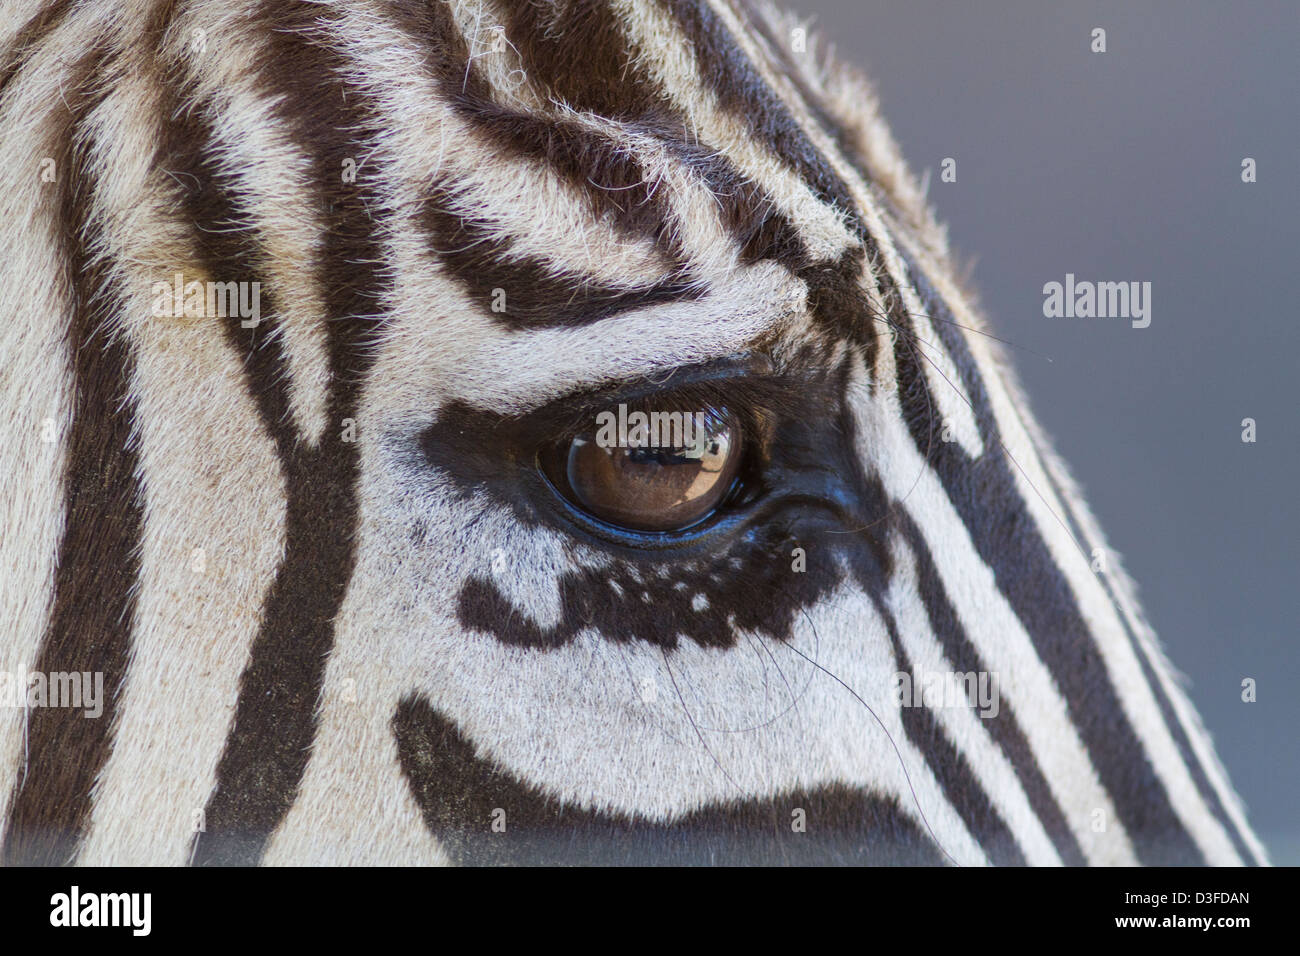 A closeup of a zebras eye and face Stock Photo